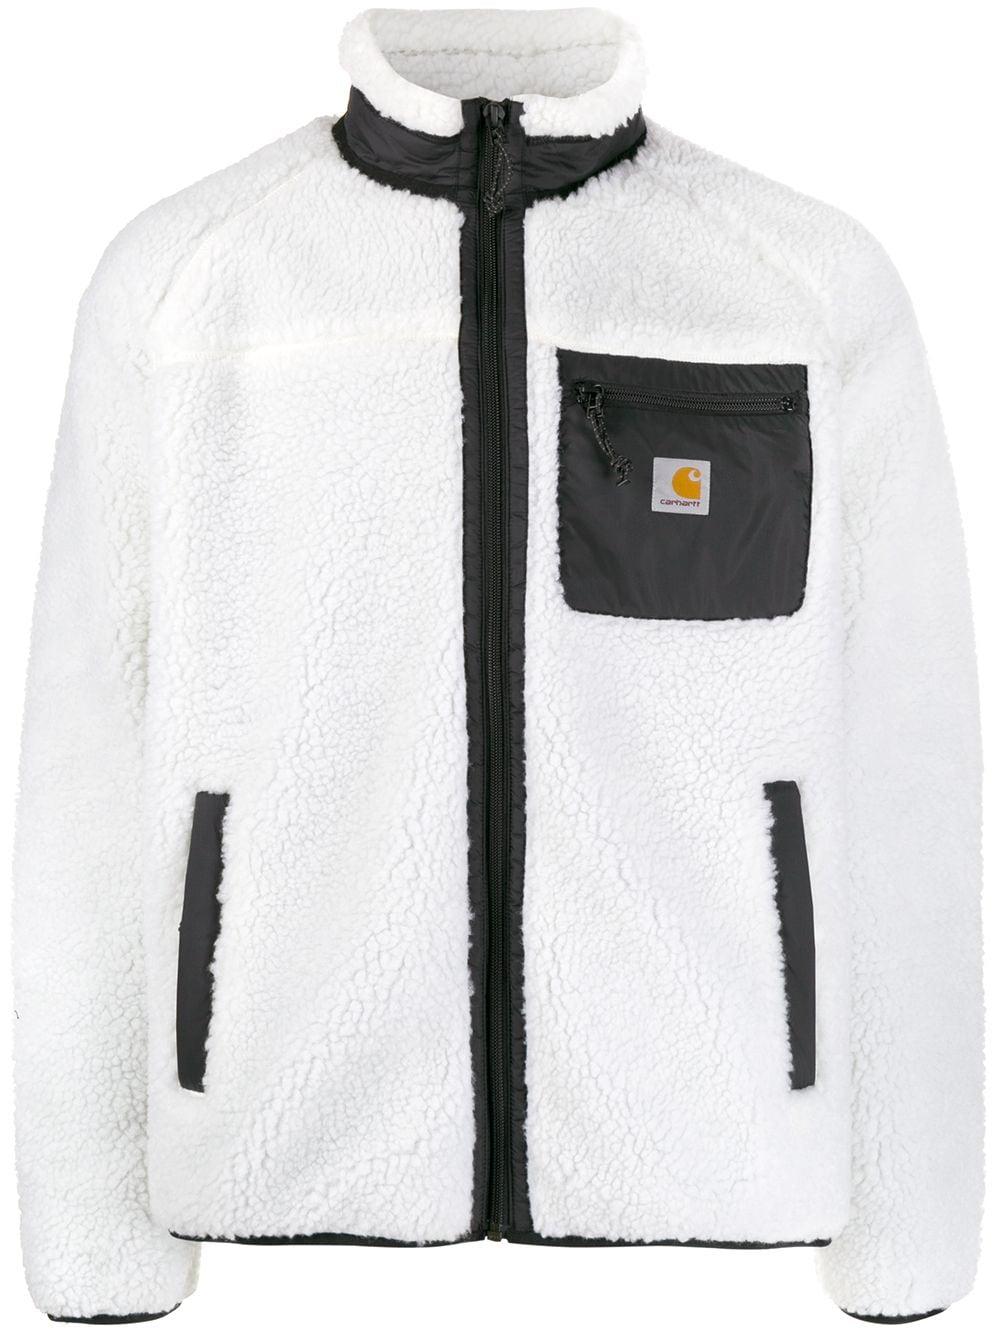 Carhartt WIP Fleece Prentis Faux-fur Jacket in White for Men - Lyst